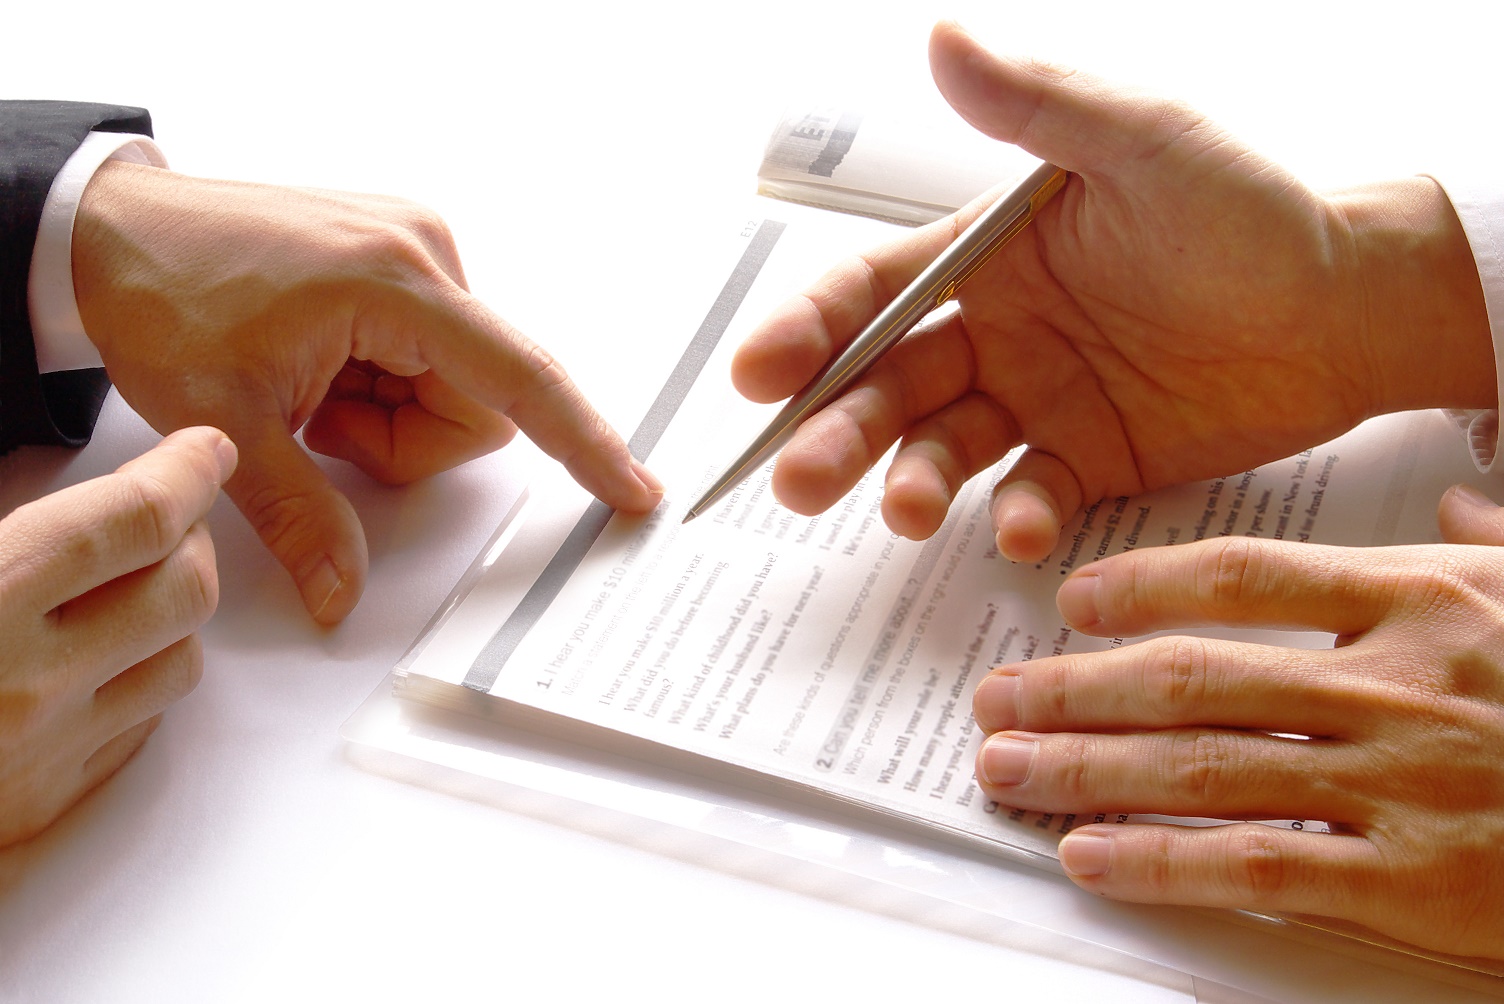 Hồ sơ đăng ký hợp đồng chuyển giao quyền sở hữu công nghiệp